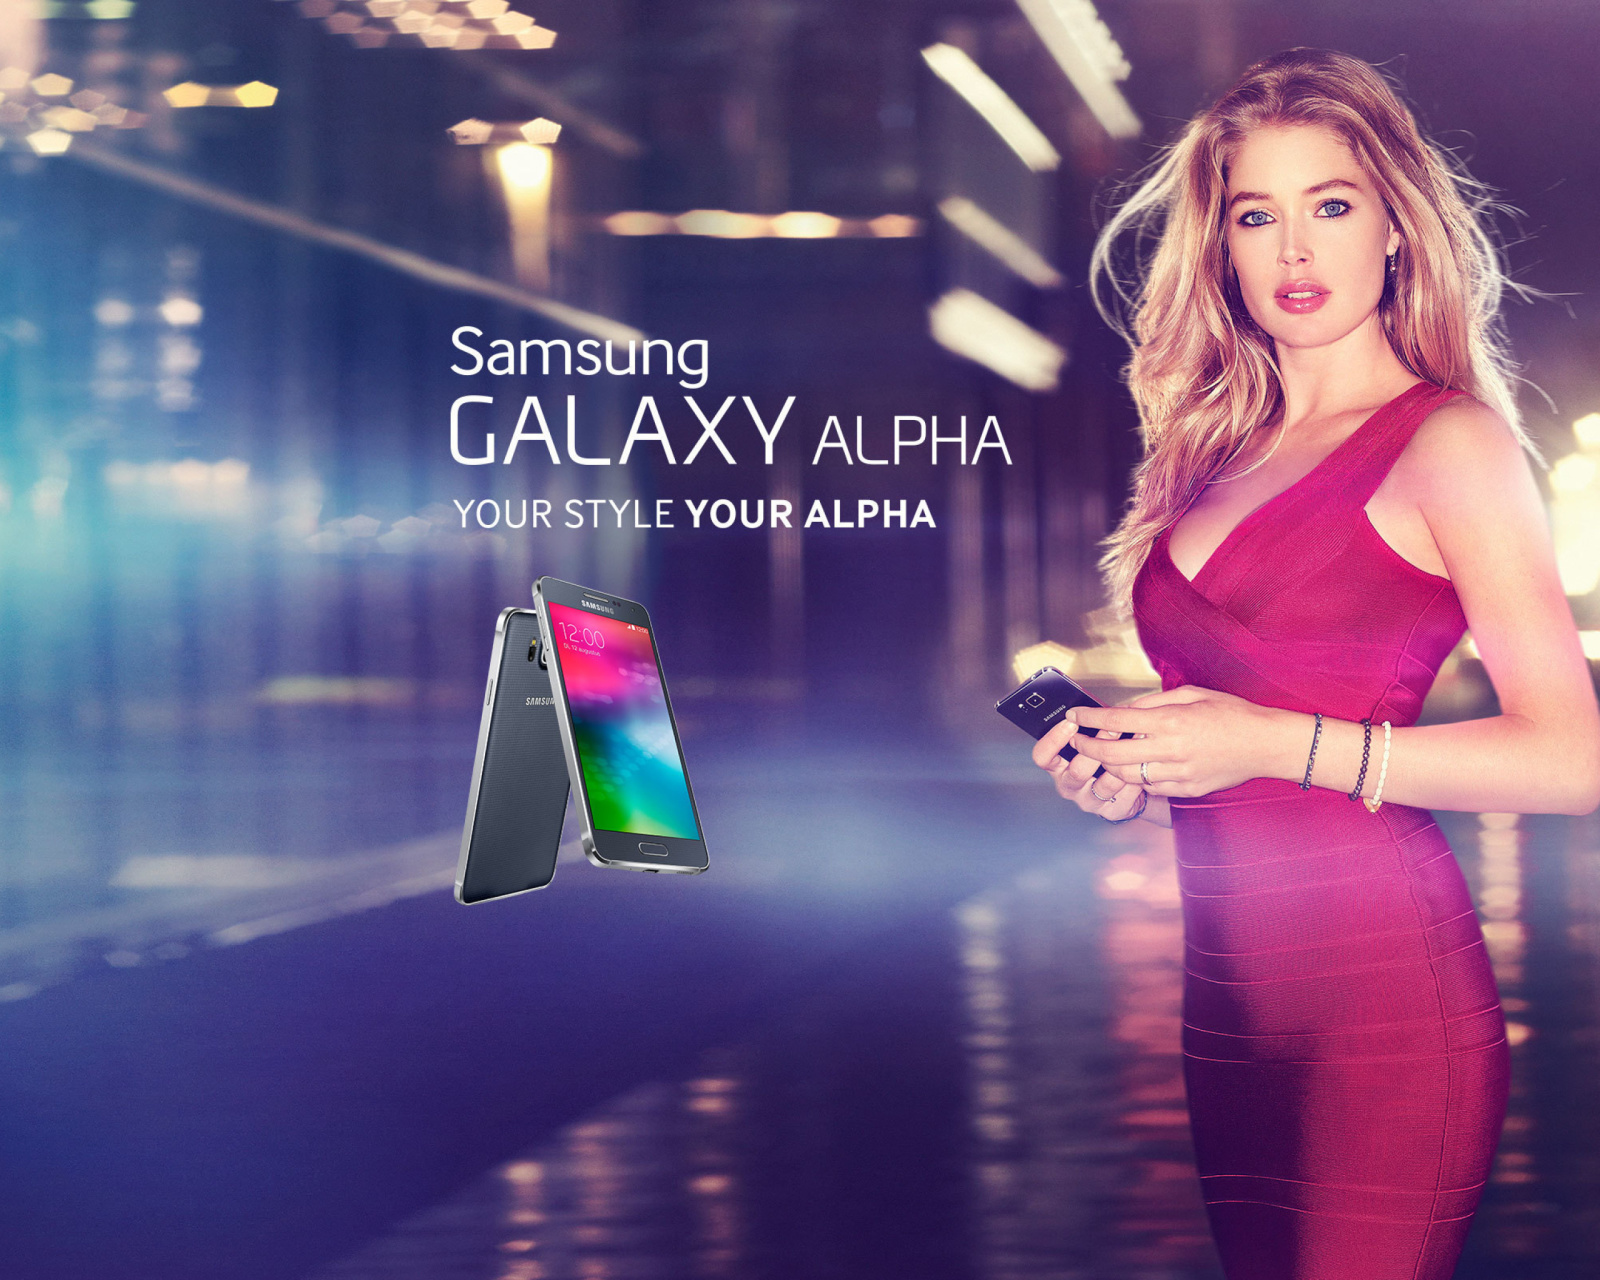 Samsung Galaxy Alpha Advertisement with Doutzen Kroes wallpaper 1600x1280